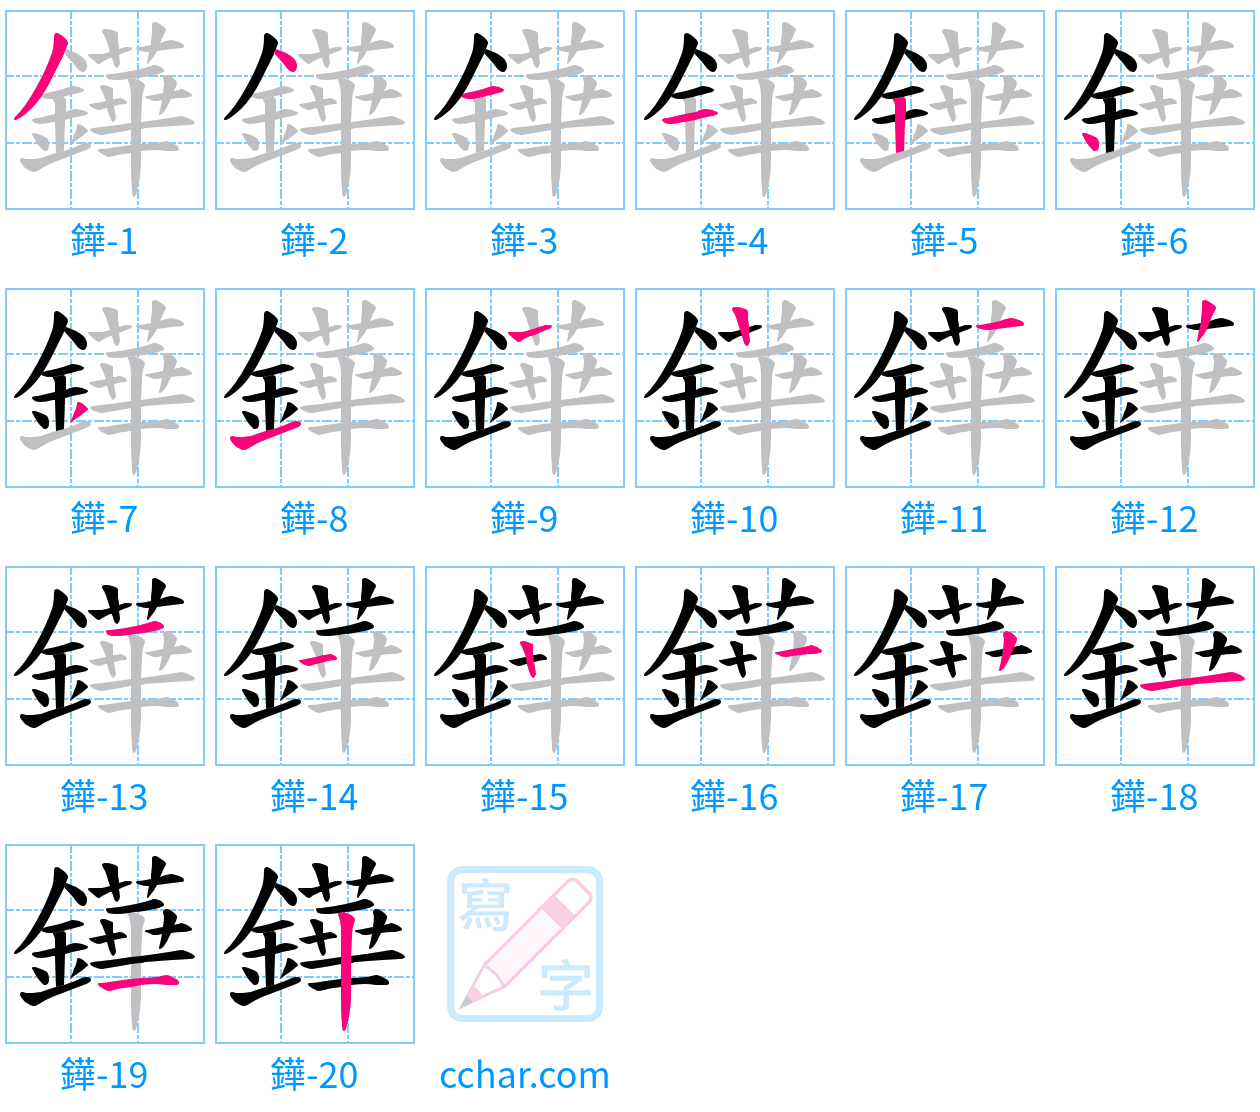 鏵 stroke order step-by-step diagram